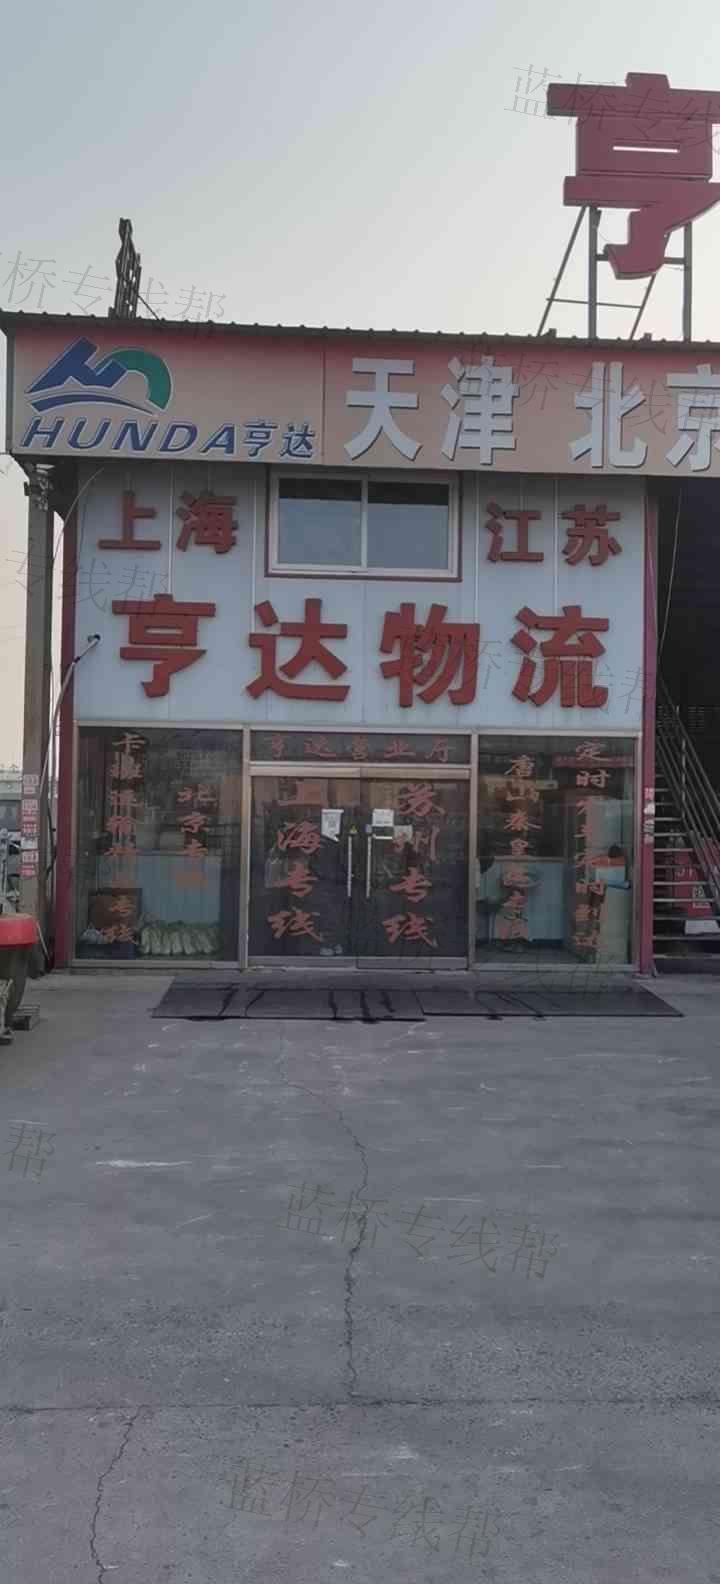 天津市亨达物流有限公司